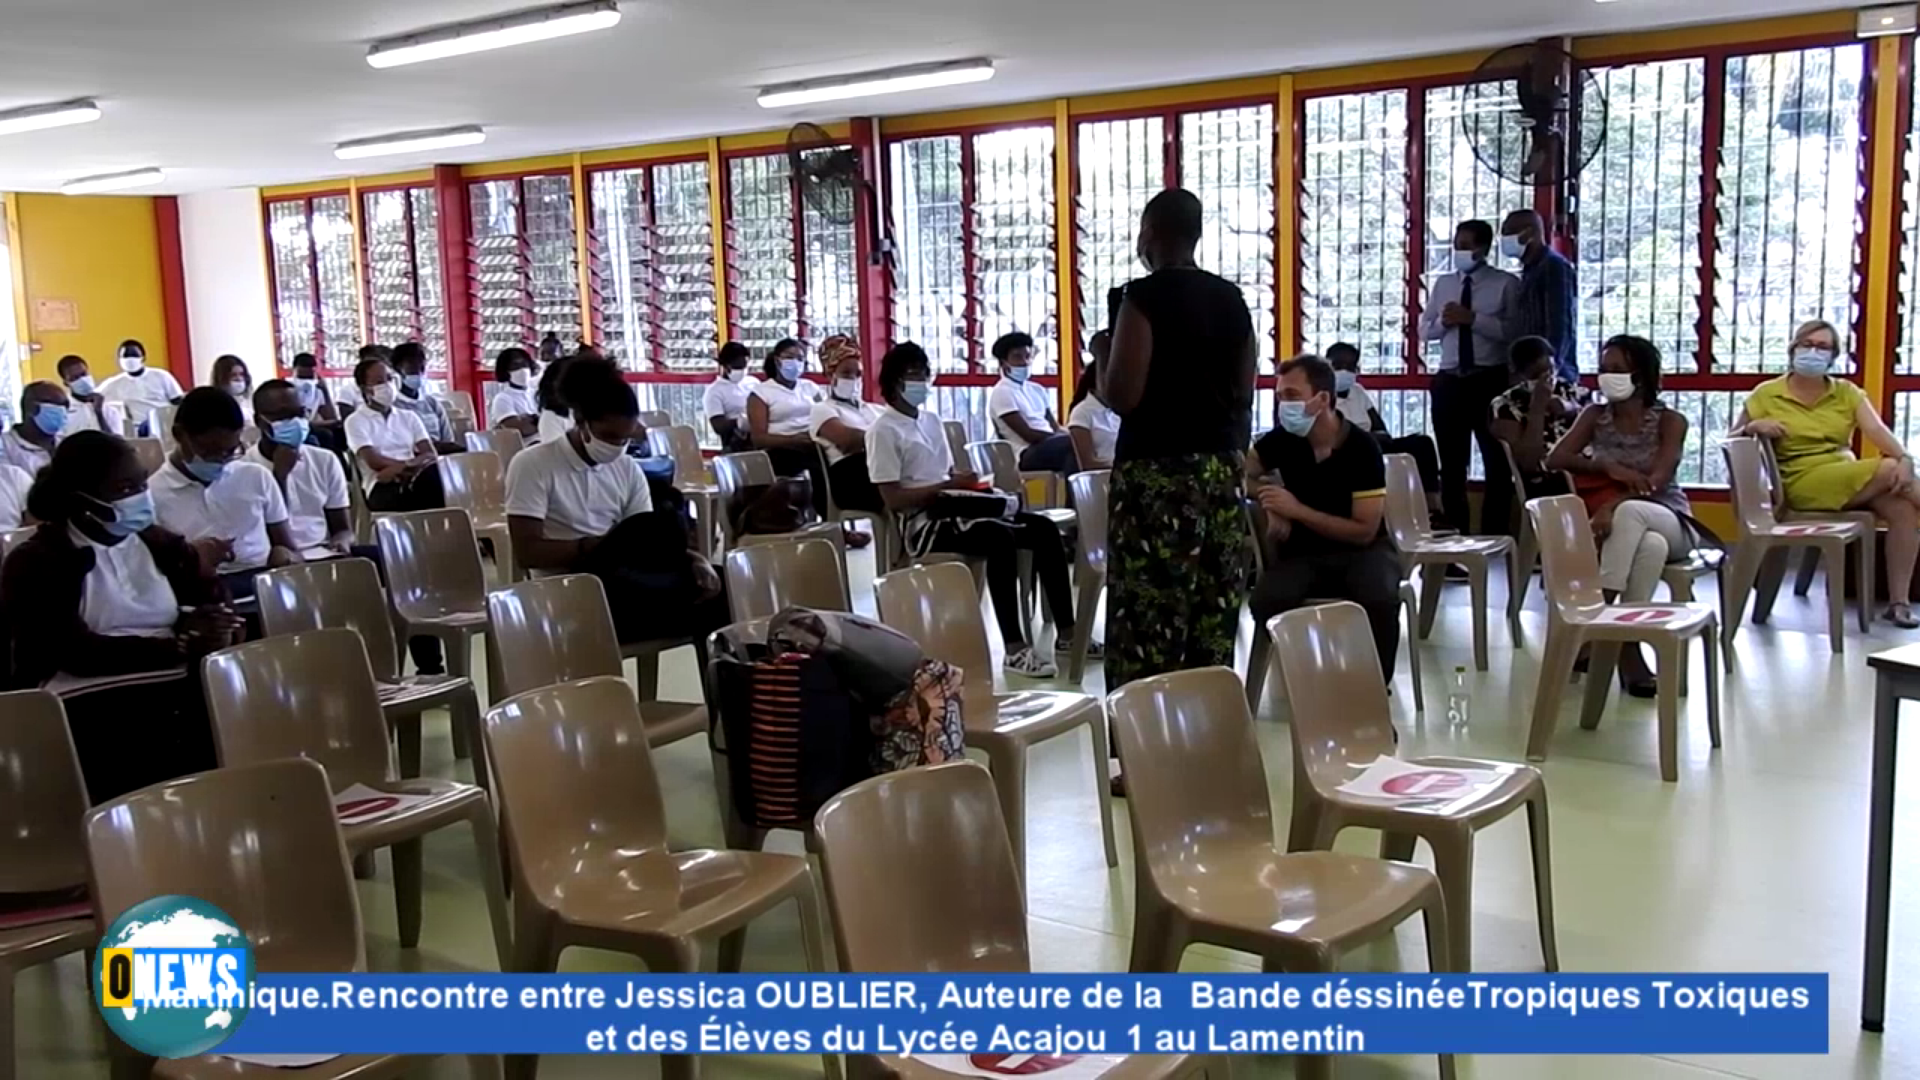 [Vidéo] Onews. Martinique. Jessica OUBLIER Auteure de la Bande dessinée Tropiques toxiques avec des élèves du Lycée Acajou1 au Lamentin